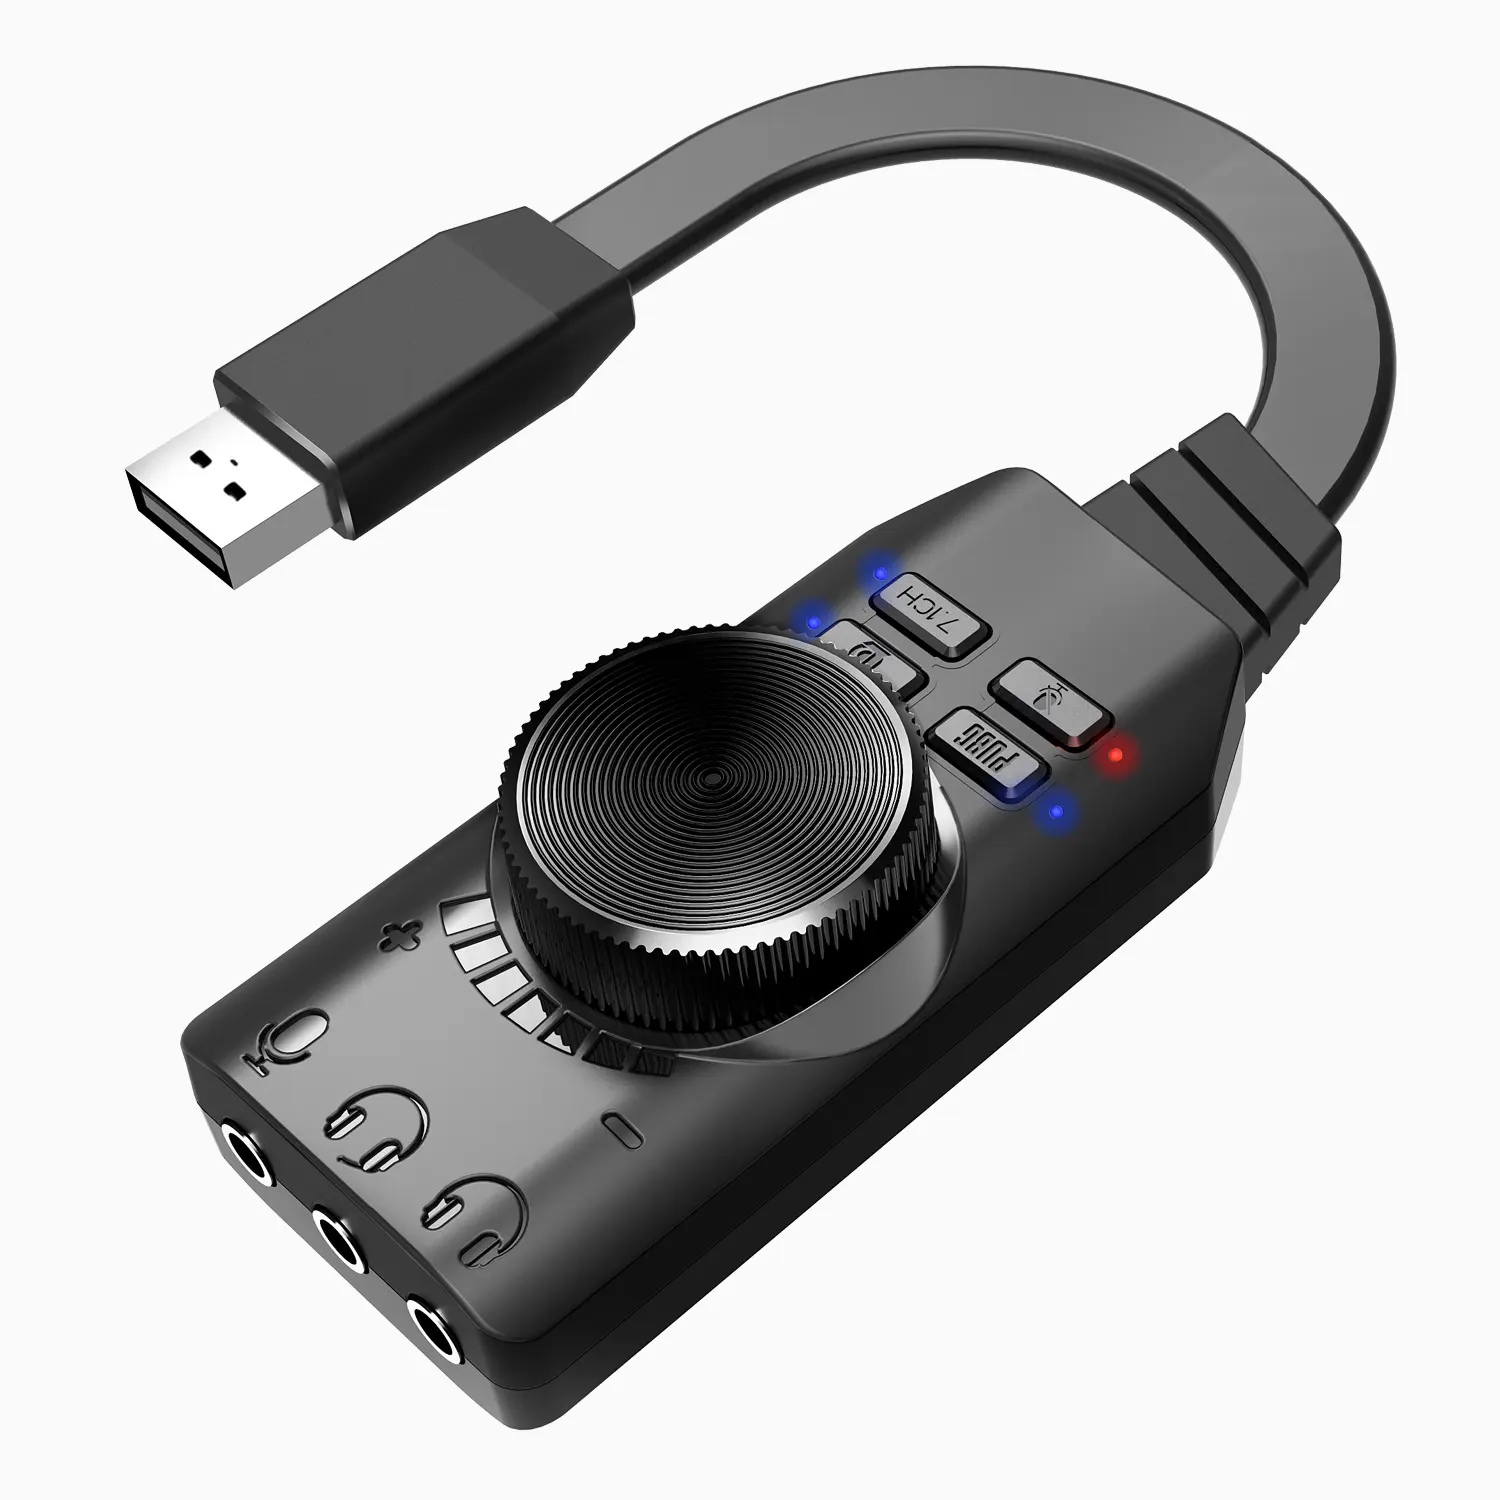 Plextone USB ses kartı sanal 7.1ch ses kartı USB ses ses kartı GS3